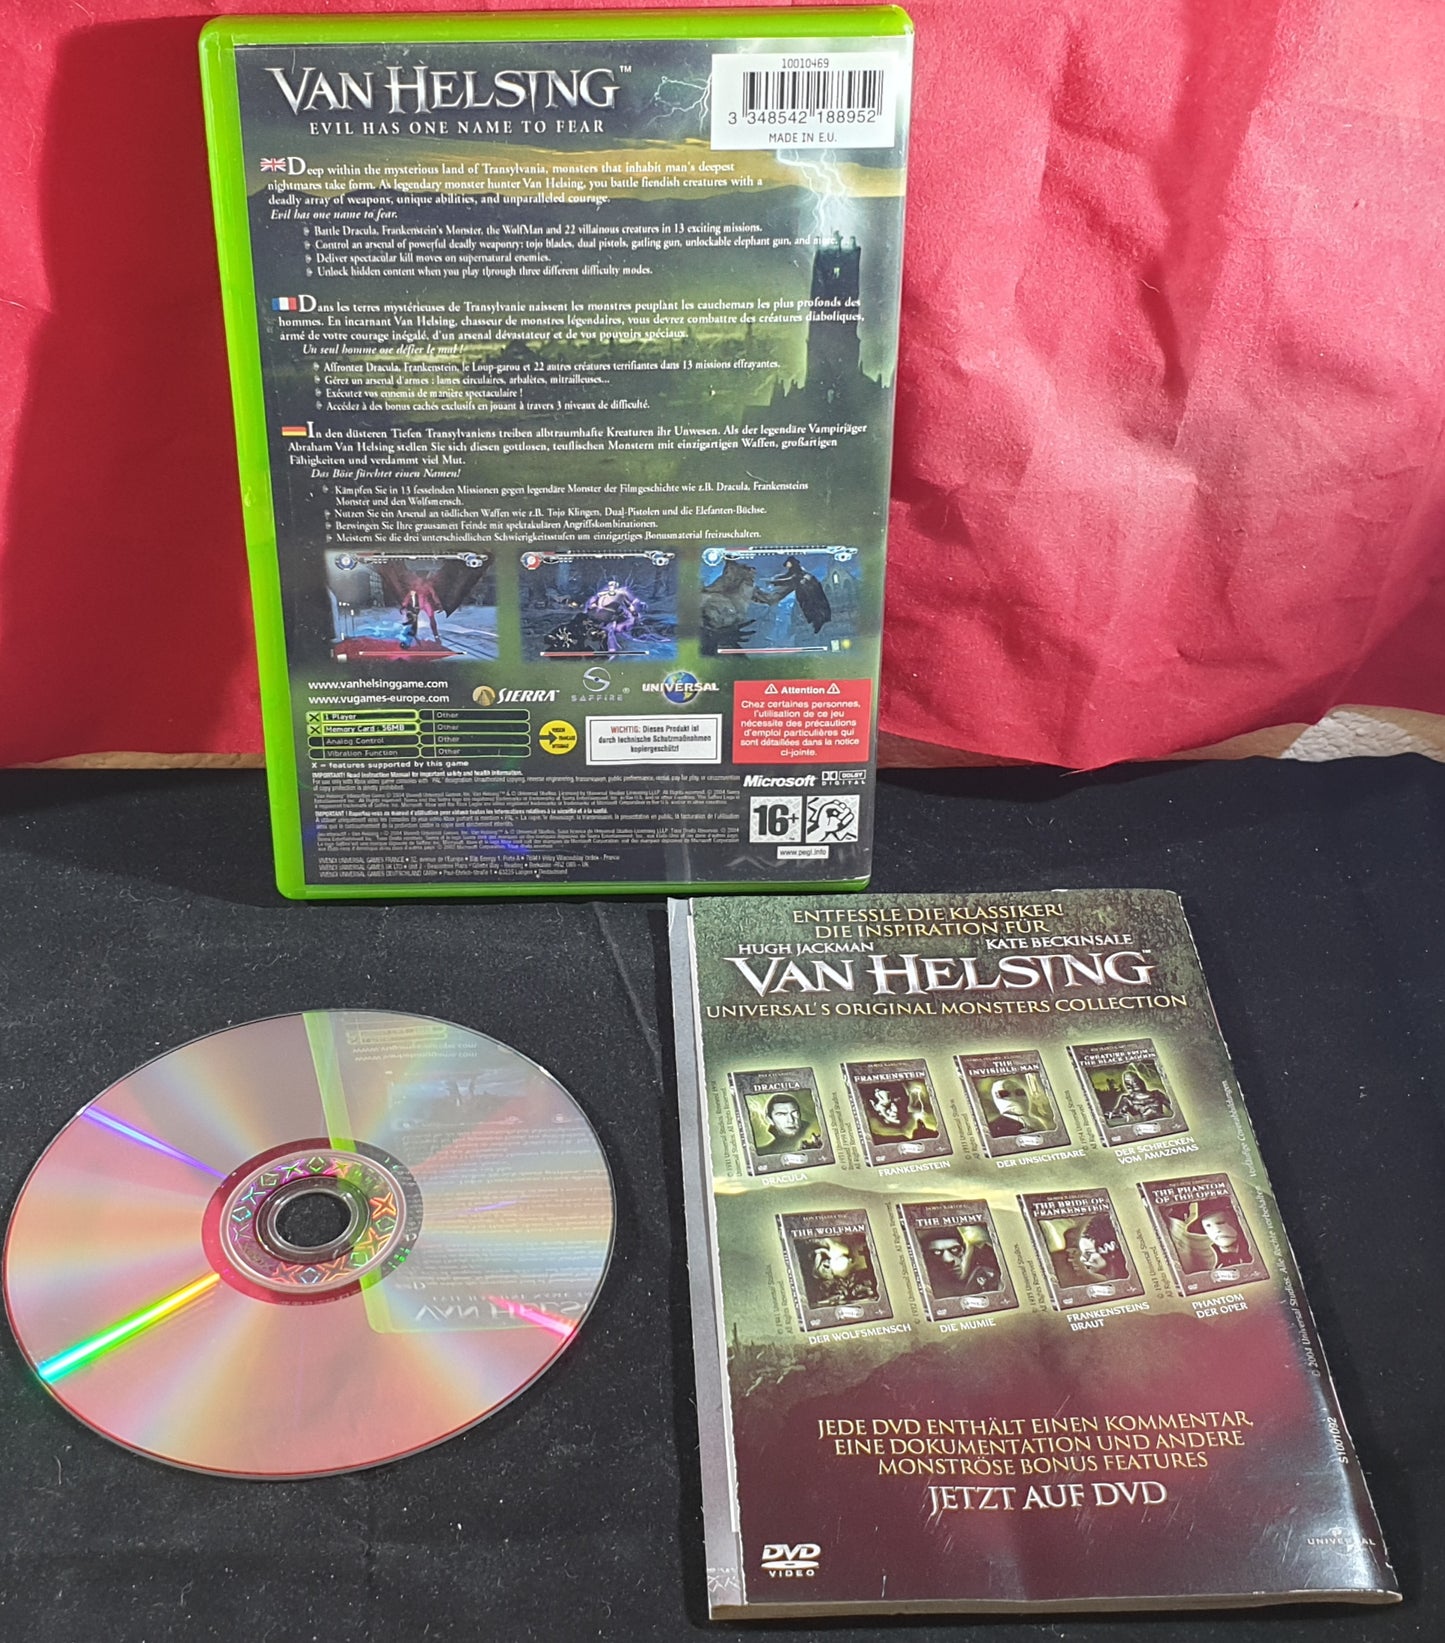 Van Helsing Microsoft Xbox Game